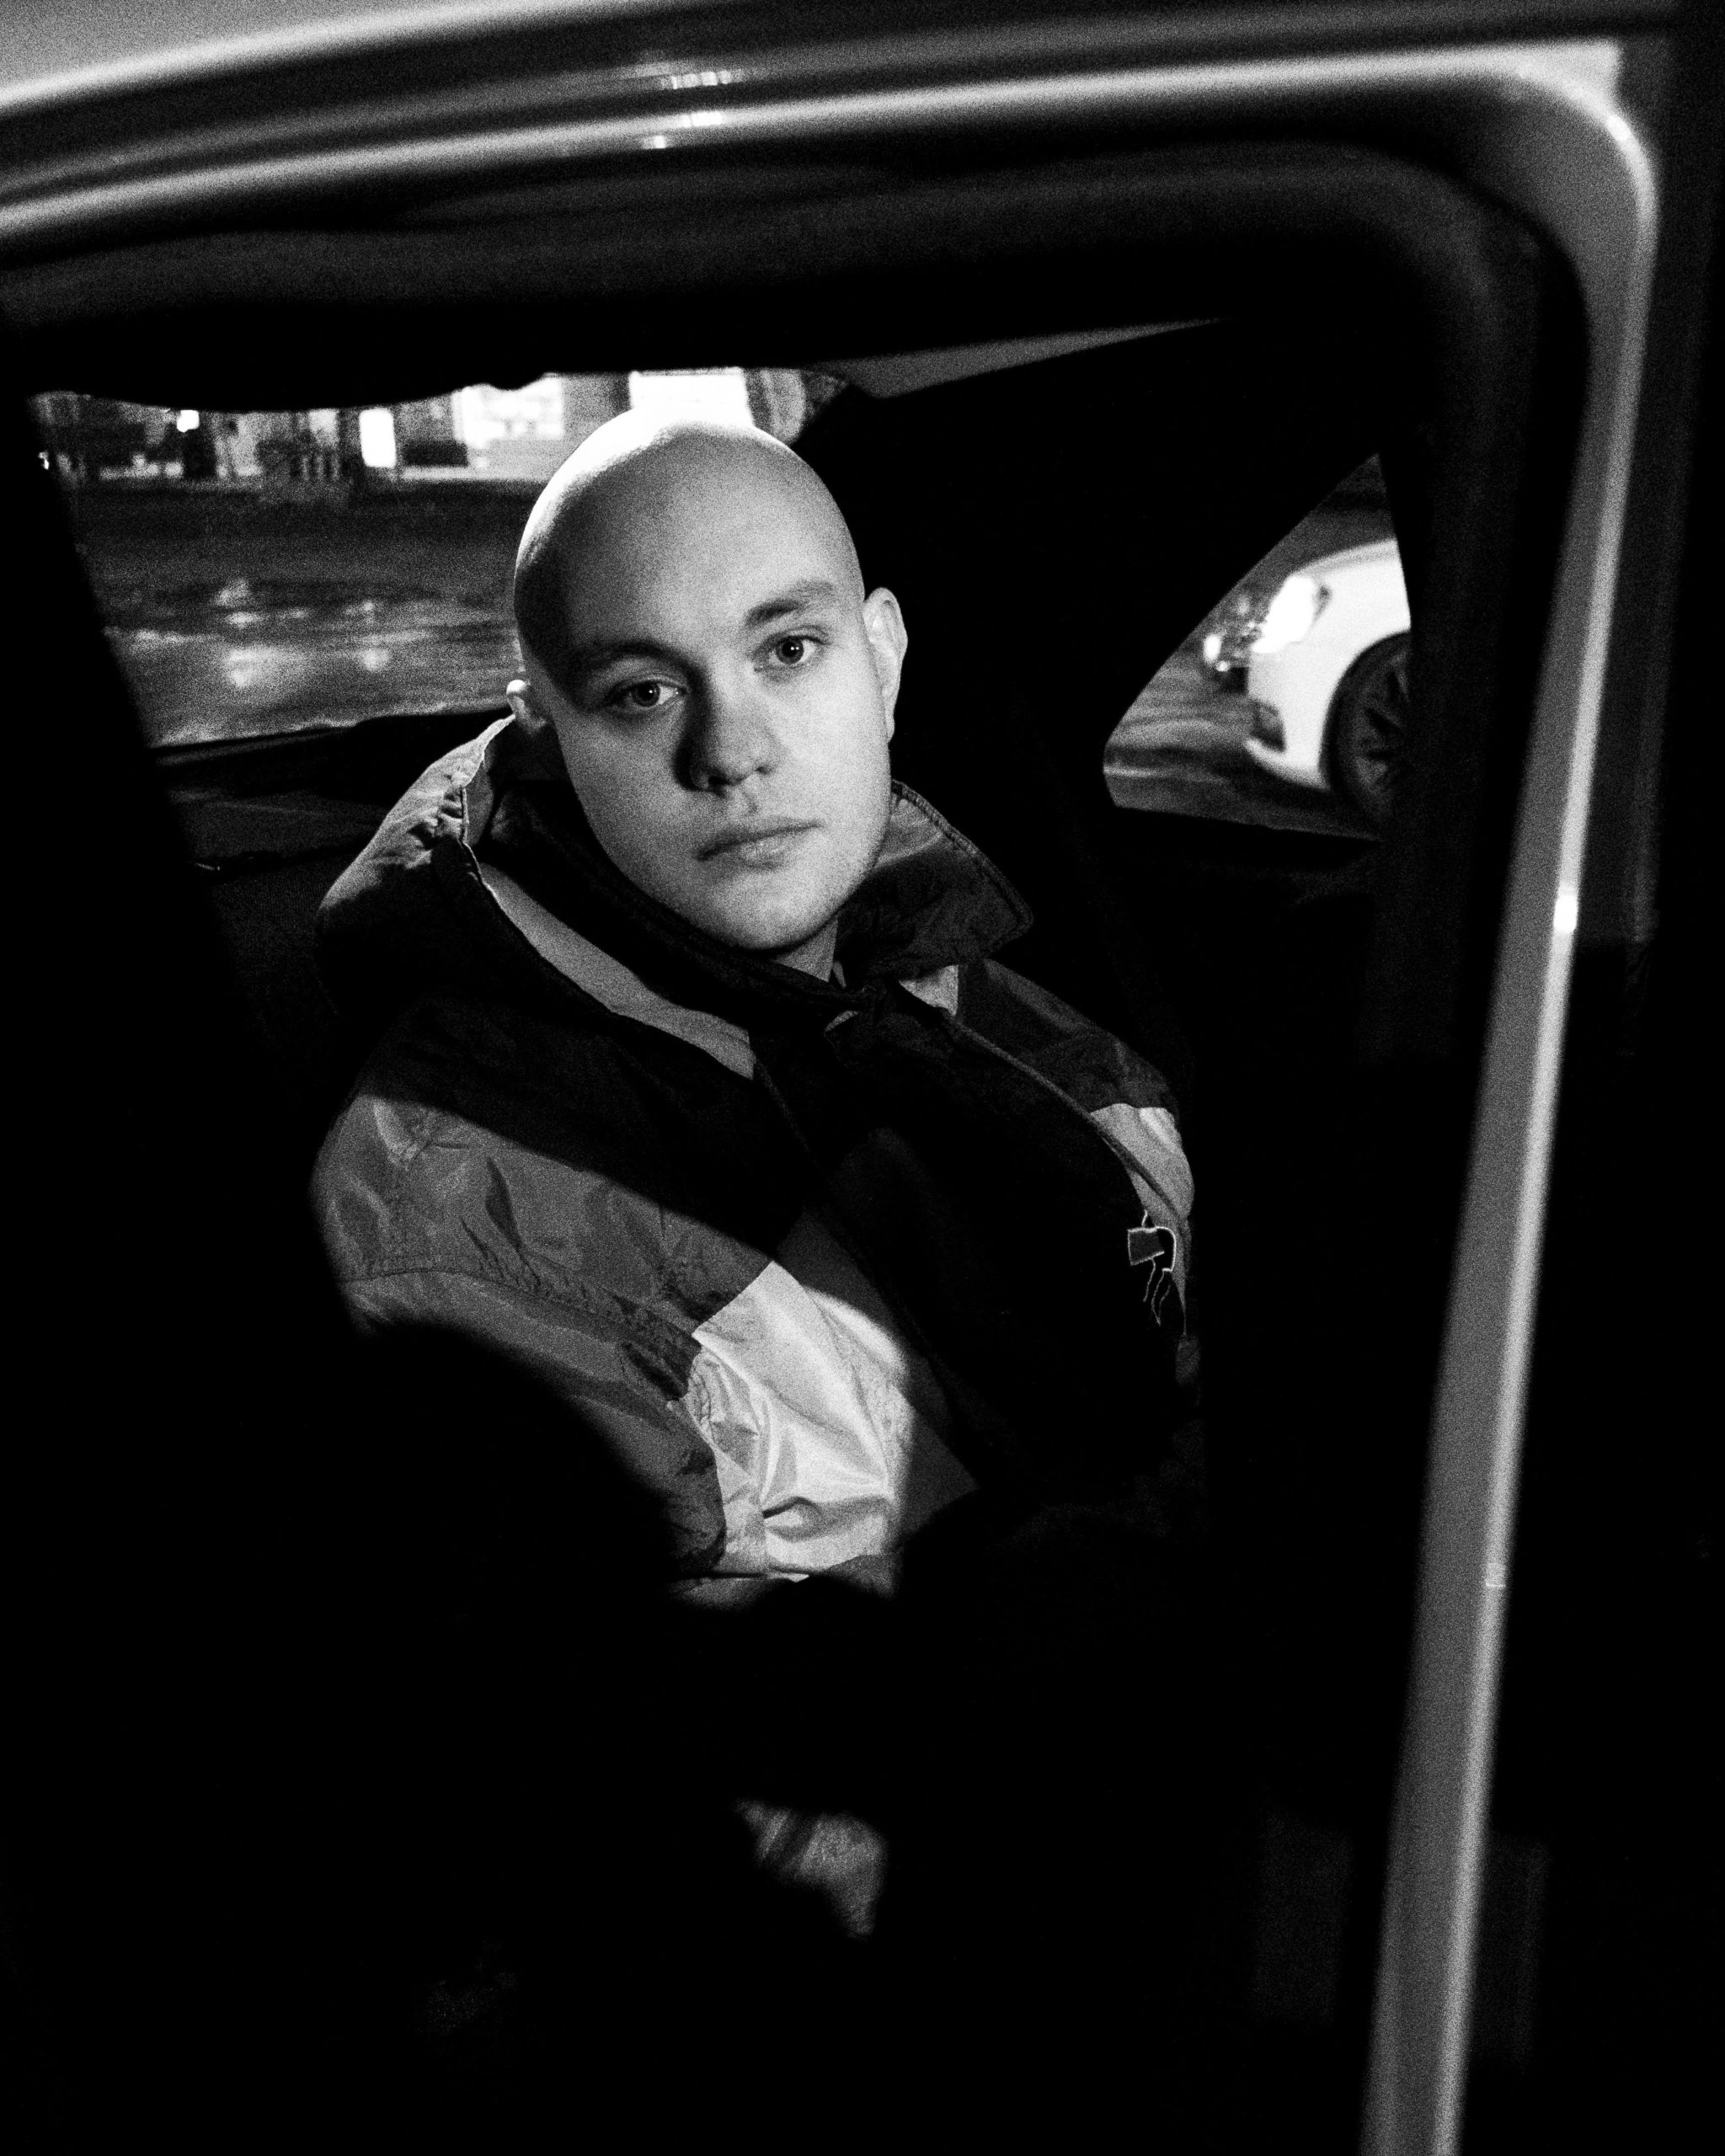 Markus sit i ein bil med ei oversized treningsjakke på. Det er mørkt rundt han og han ser alvorleg inn i kamera. Bilete er i svart-kvitt. 